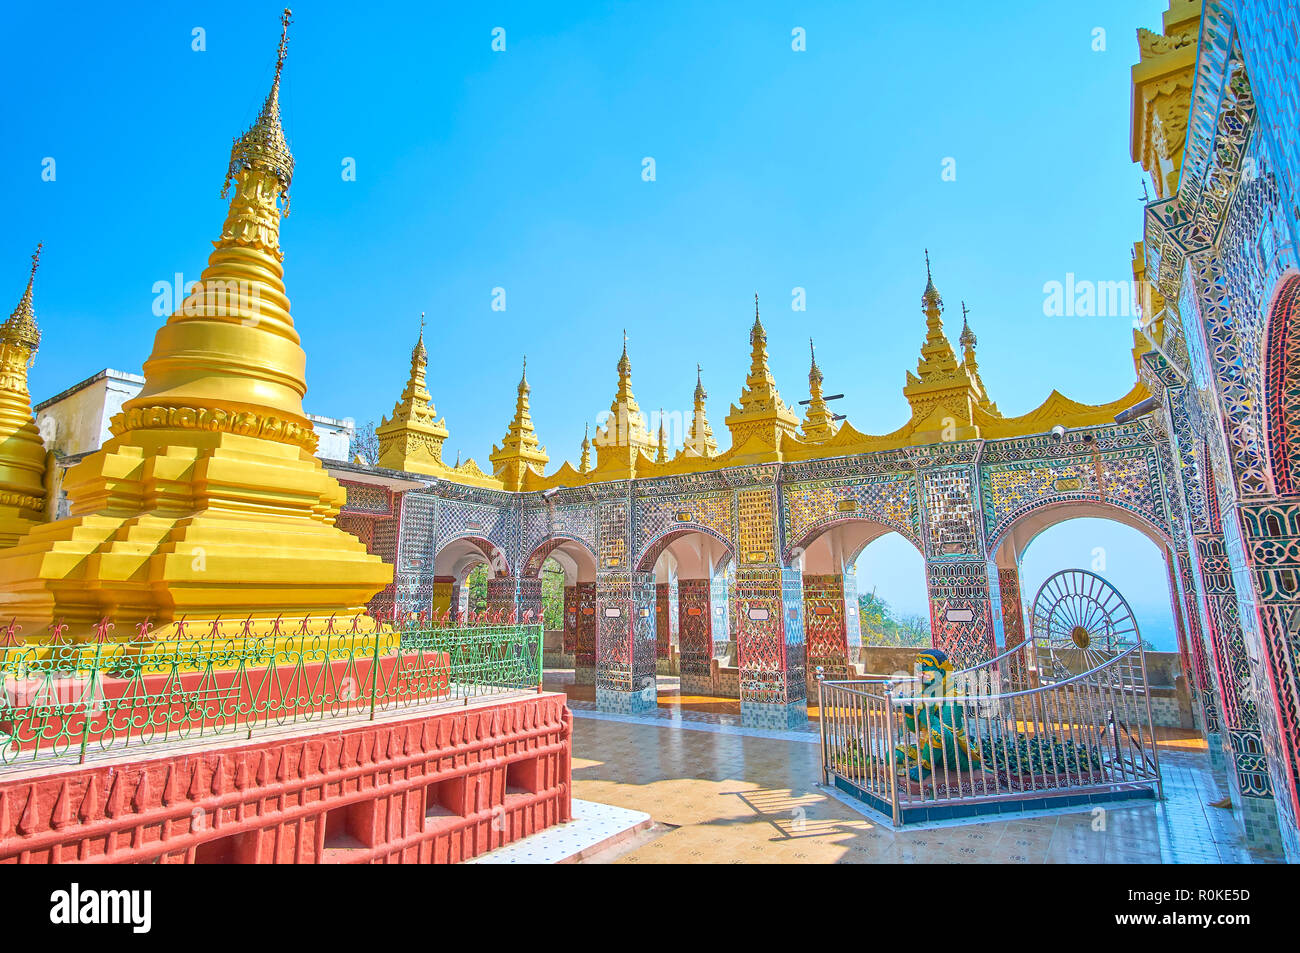 Le mur, réalisée dans le travail technique sont la carte de visite de Su Taung Pyae Temple sur le sommet de la colline de Mandalay, Myanmar Banque D'Images